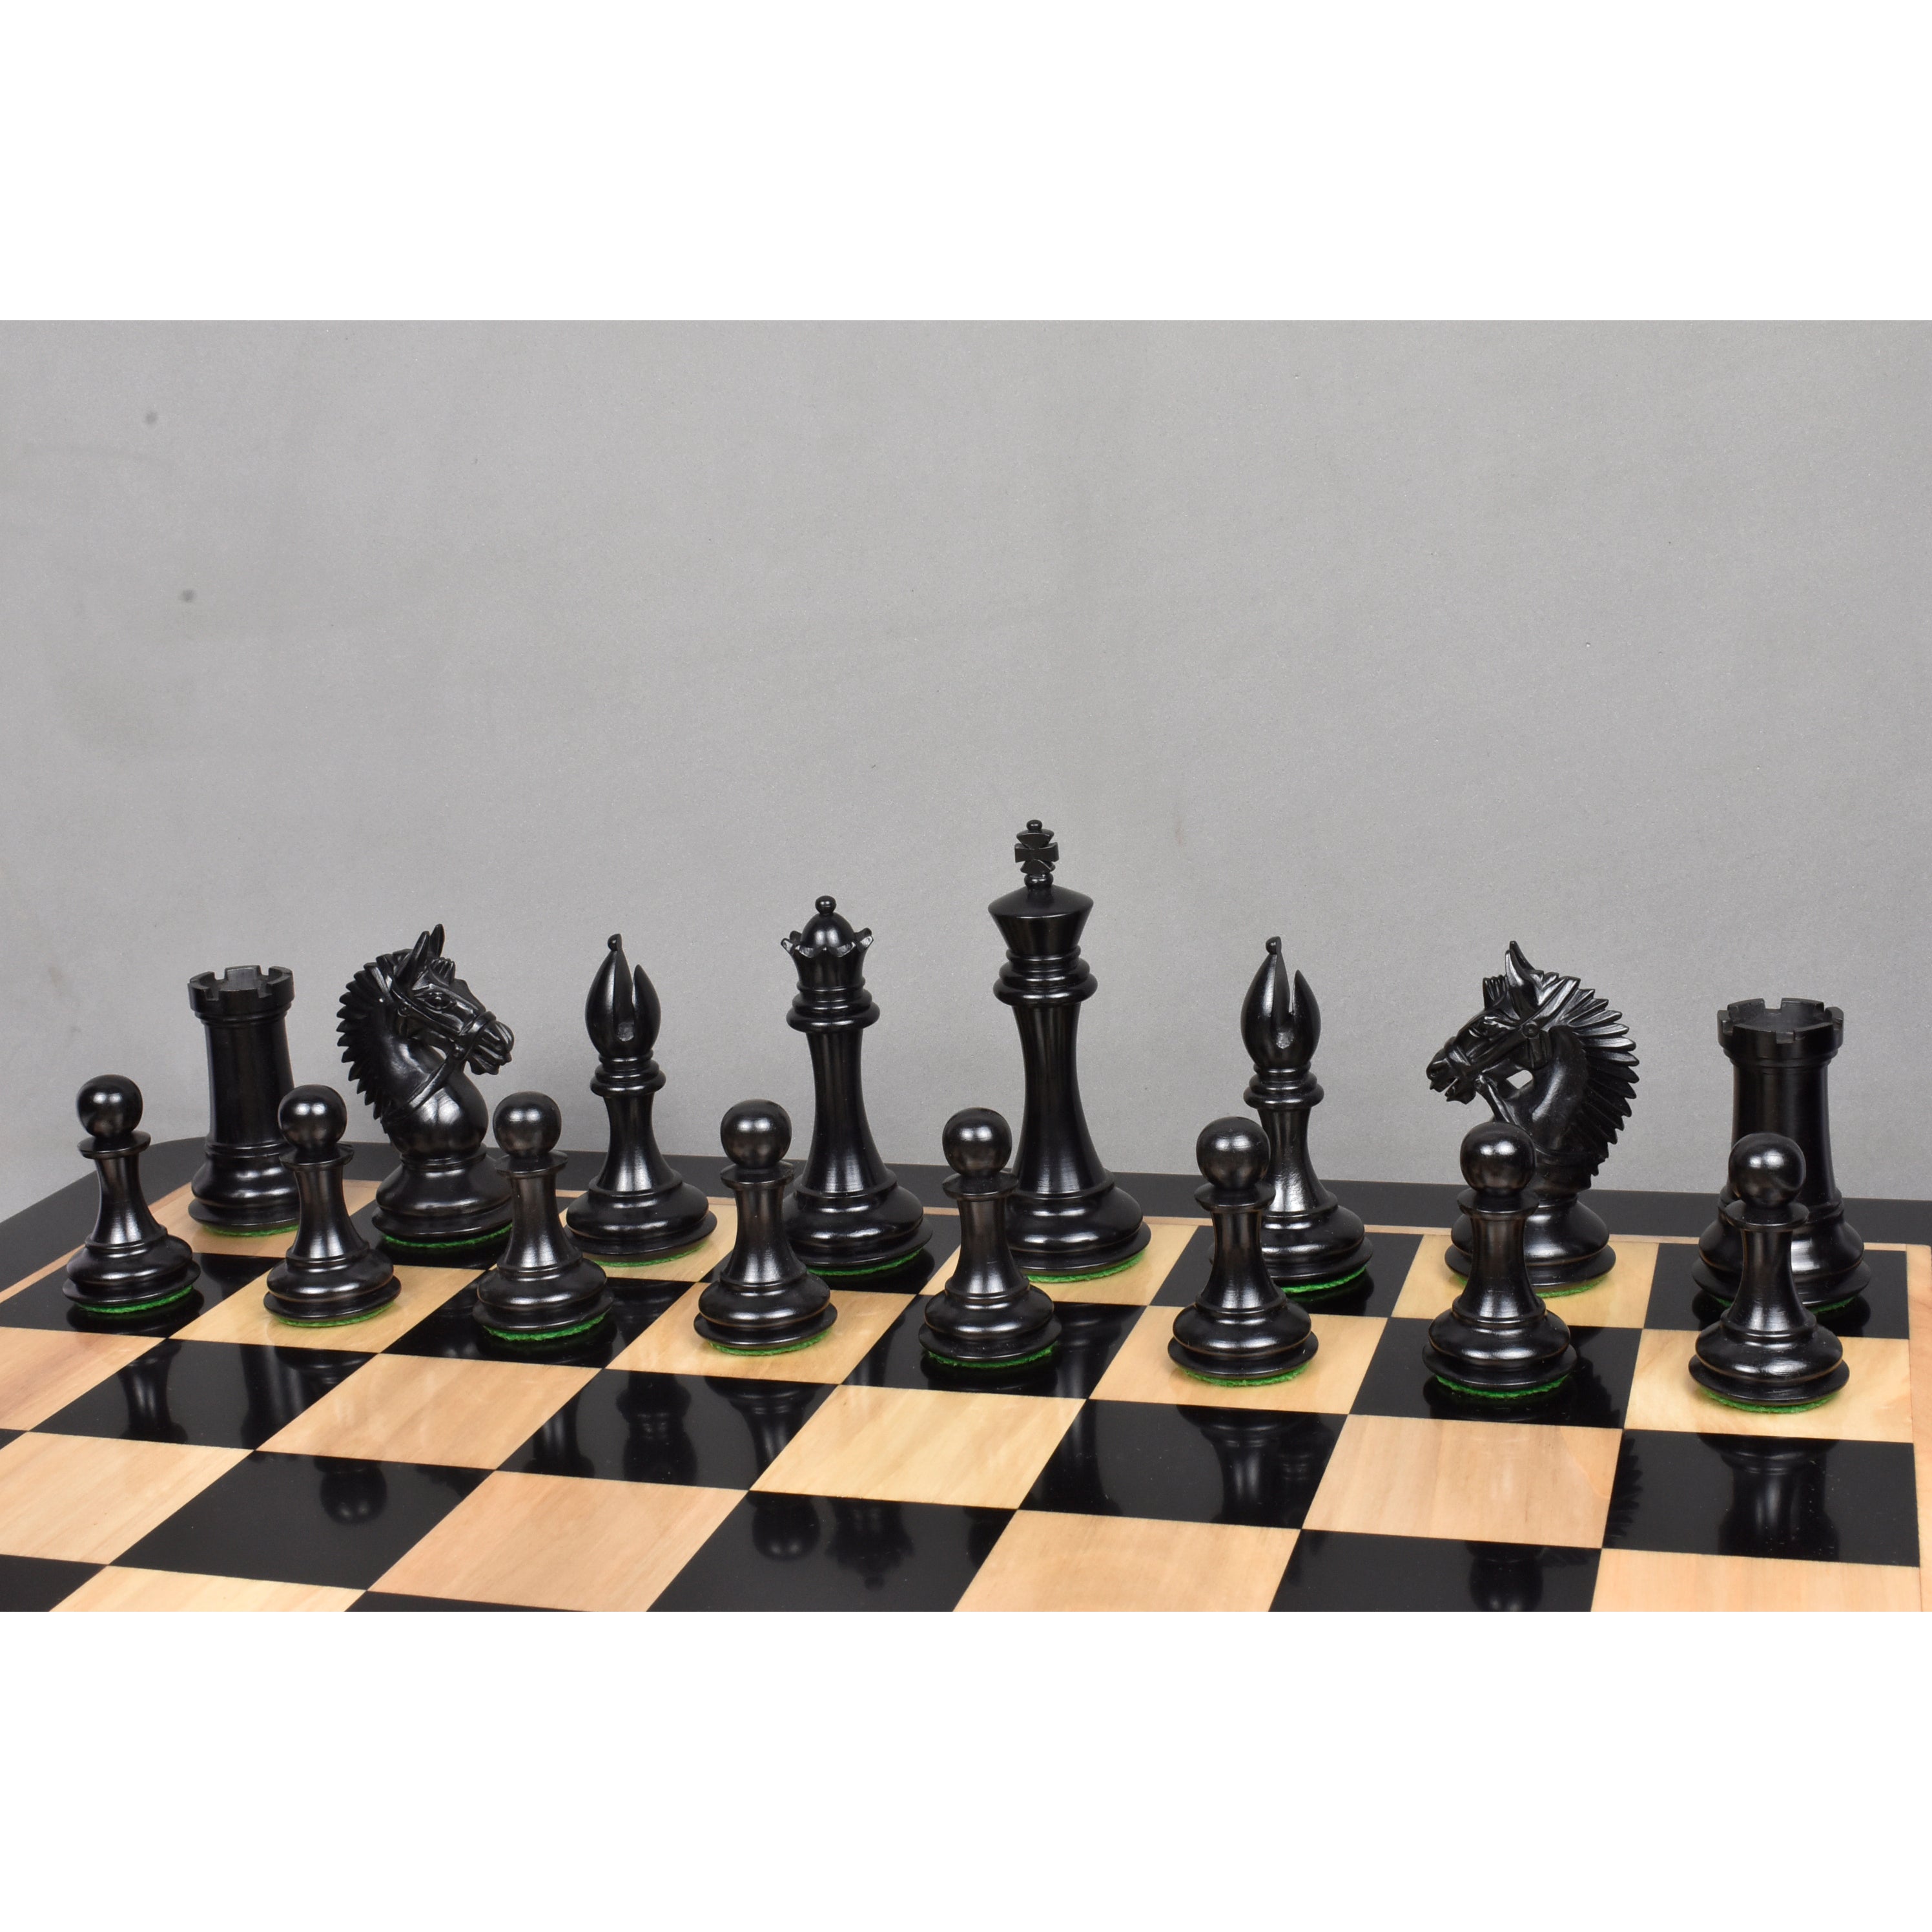 En Prise - Chess Terms 